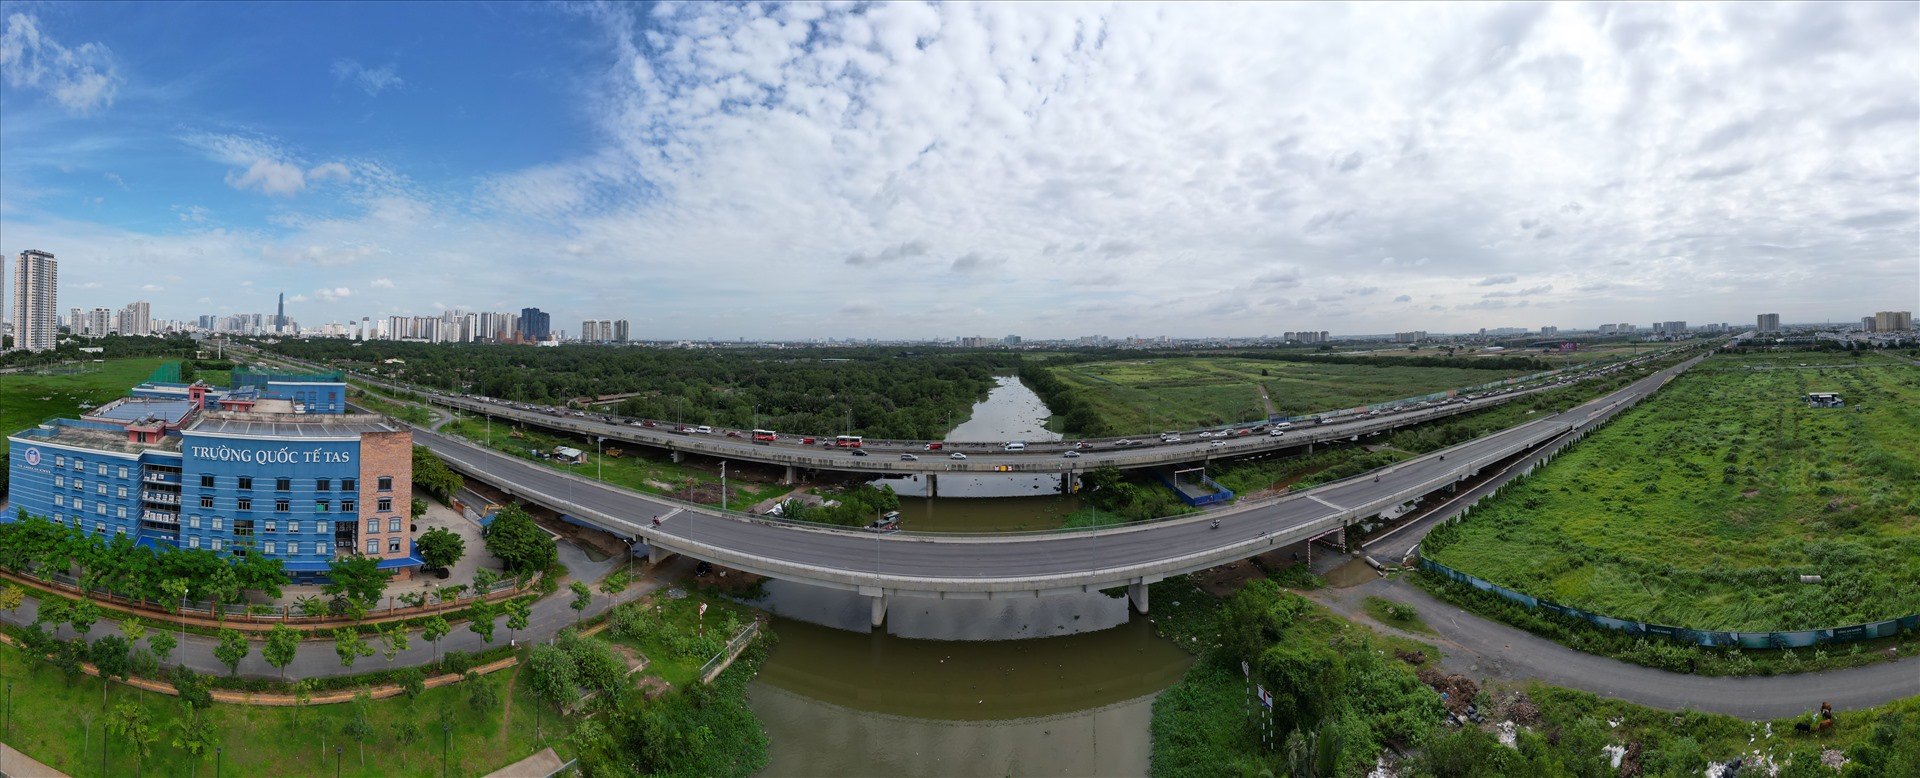 Cùng với tuyến đường, dự án còn xây ba cây cầu gồm: Bà Dạt, Mương Kênh, Bà Hiện với tổng chiều dài cầu khoảng 567 m. Trong ảnh là cầu Mương Kênh với chiều dài 359 m cơ bản đã hoàn thiện.